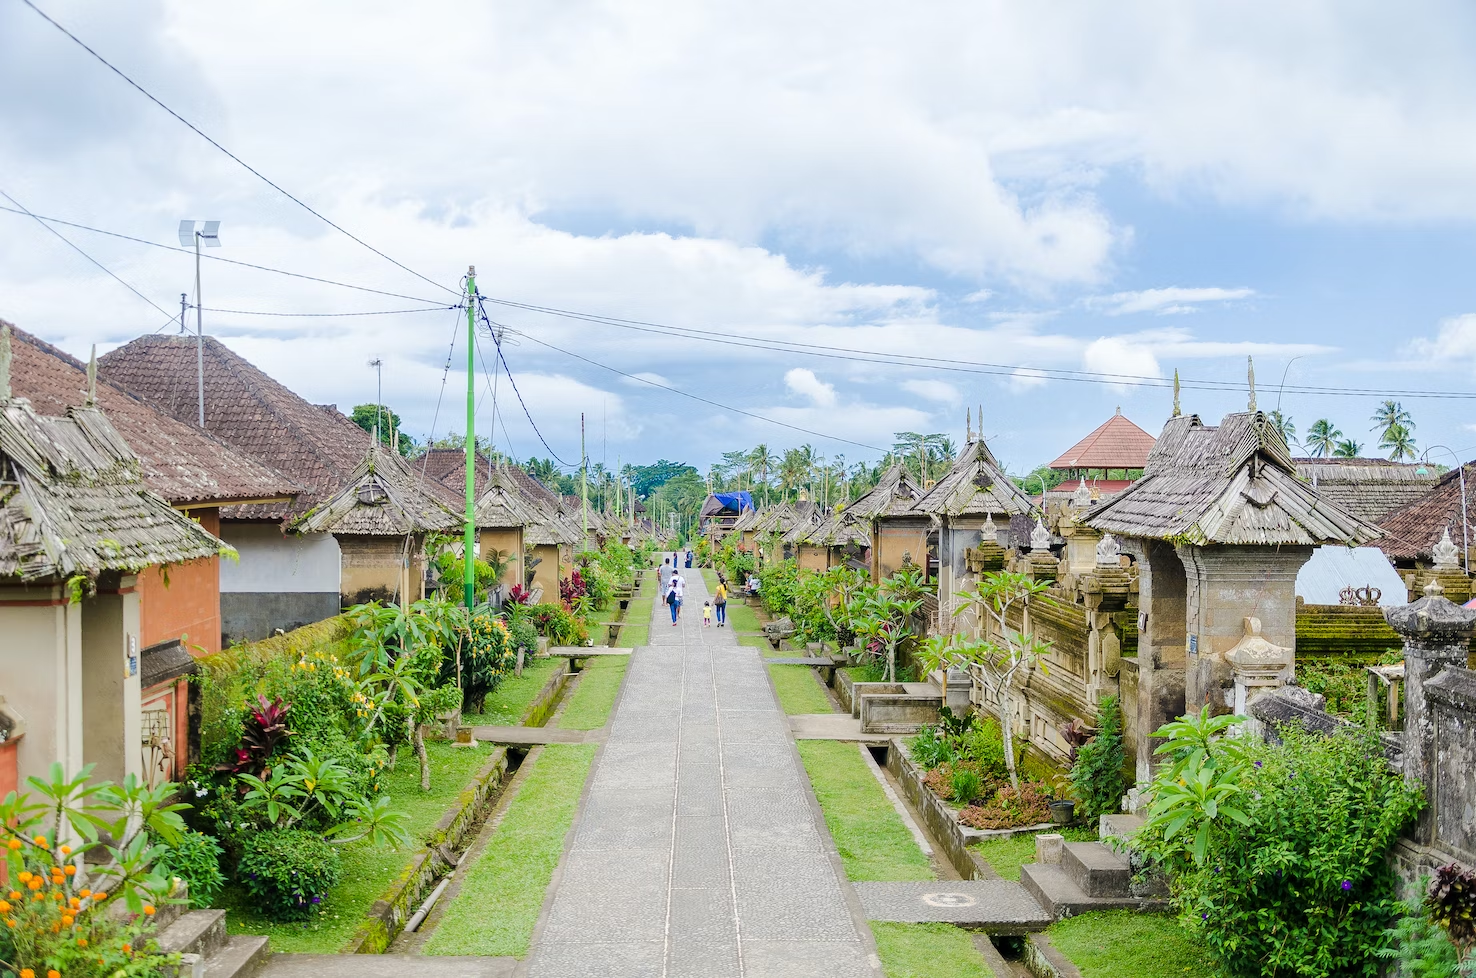 The Artsy Village of Penglipuran